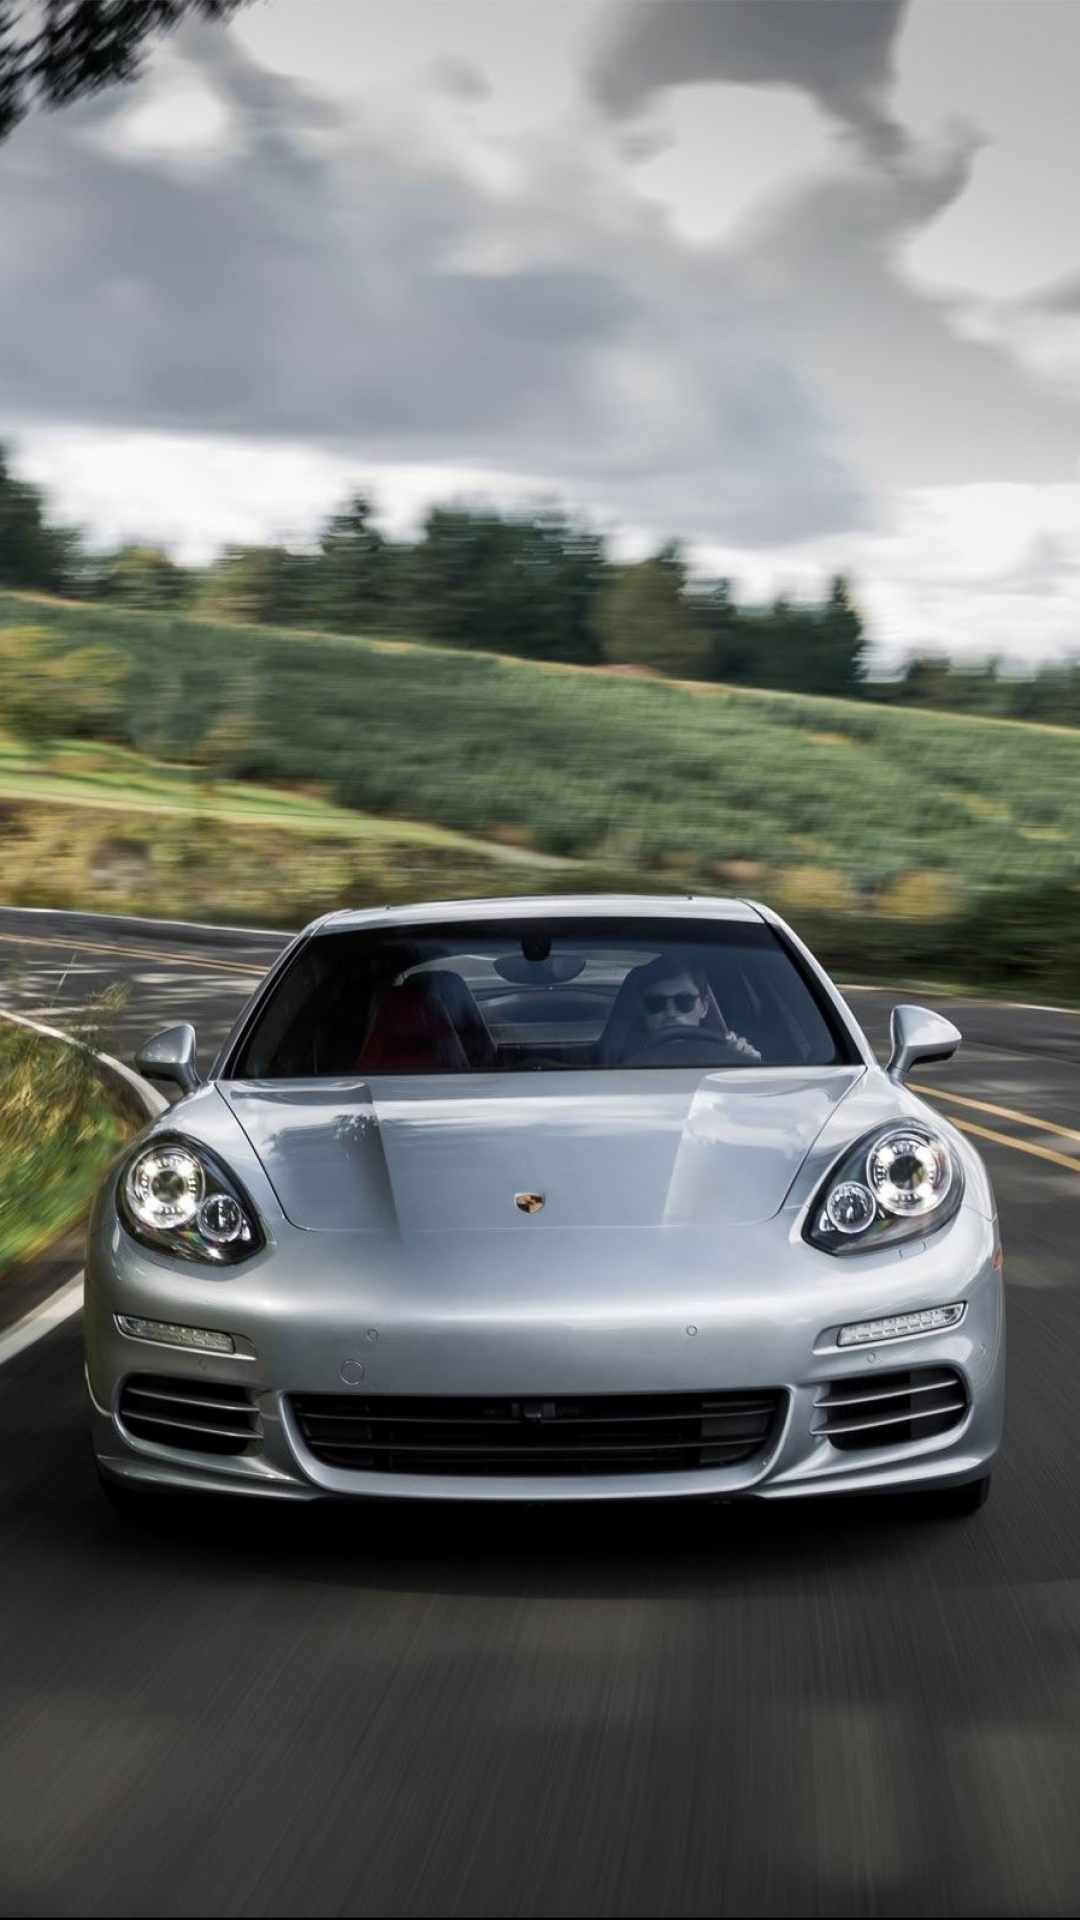 Descarga gratuita de fondo de pantalla para móvil de Porsche, Vehículos, Porsche Panamera 4S.